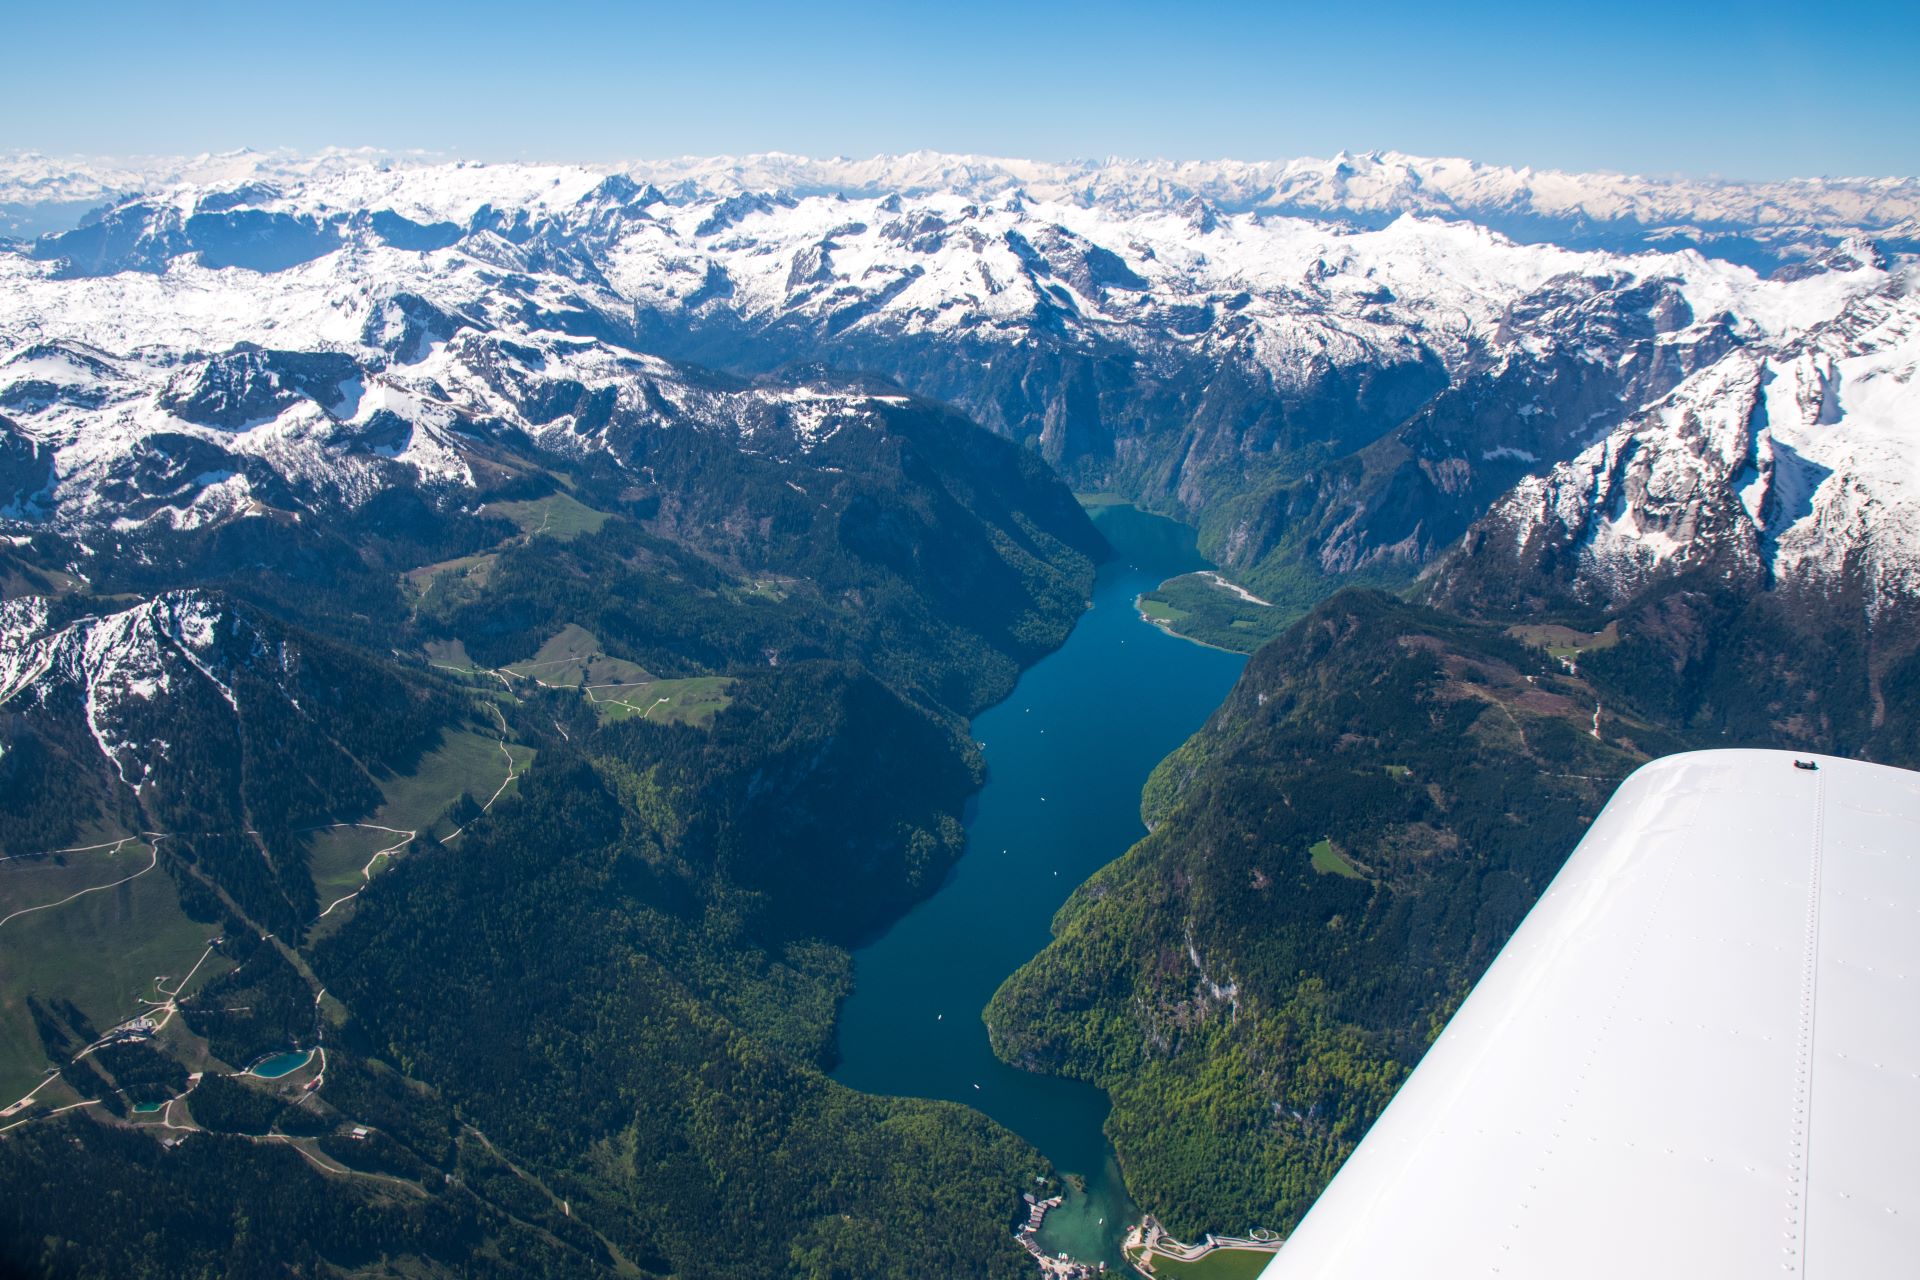 Flugstunde Alpentour, Königssee mit klarem dunkelblauen Wasser